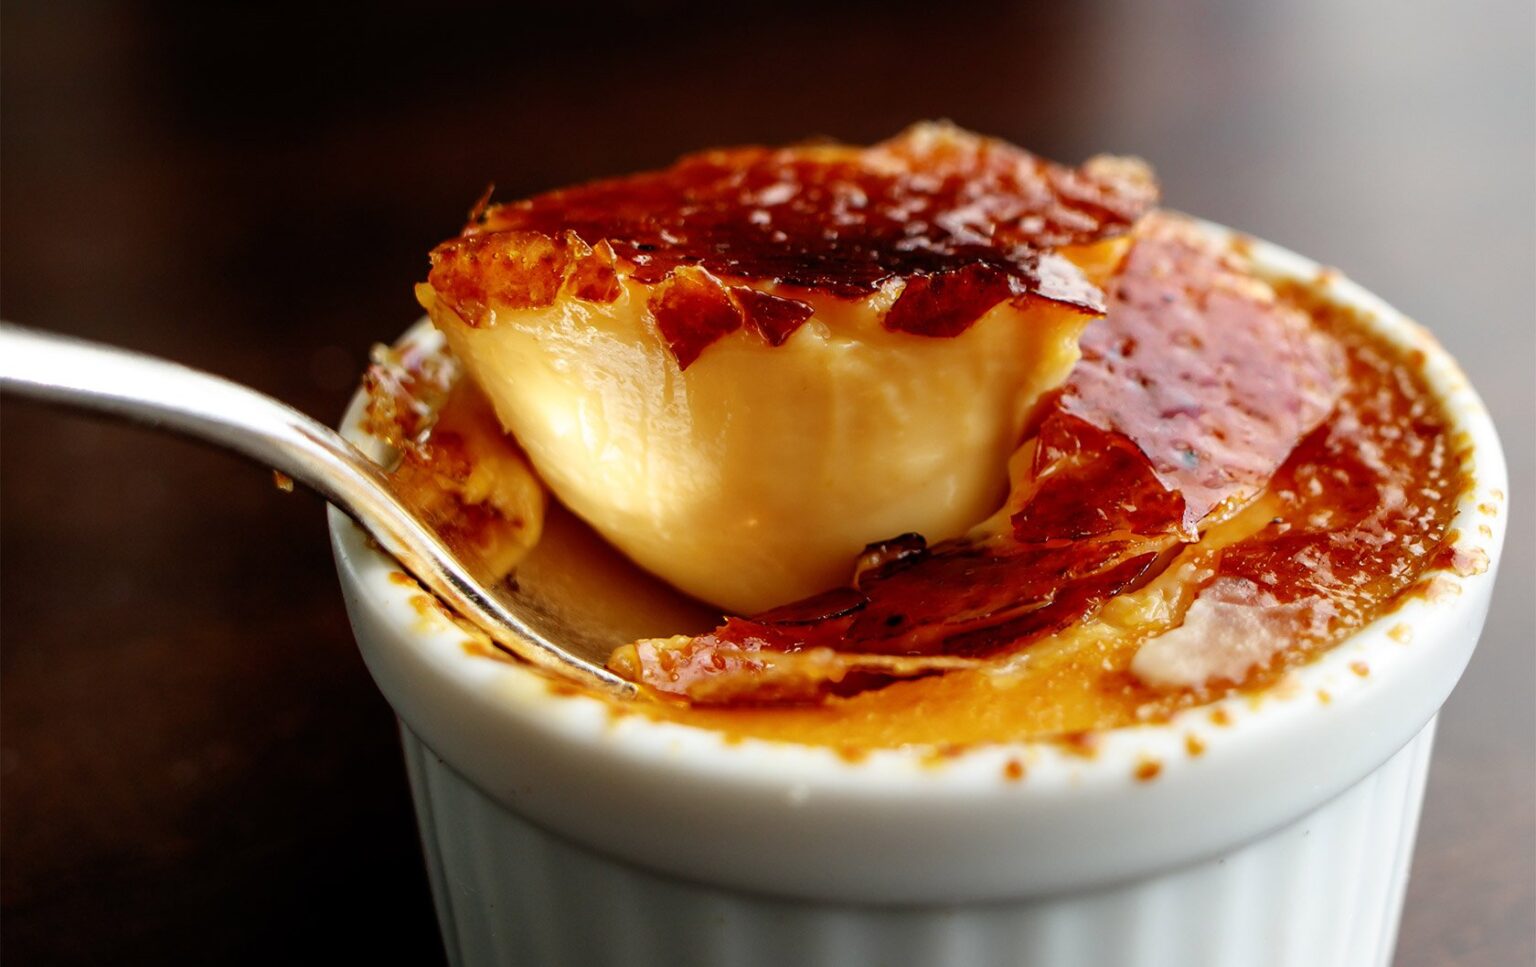 Crème brûlée bao gồm một lớp nhân sữa trứng béo ngậy, làm từ vani, và phủ một lớp caramel cứng bên trên.